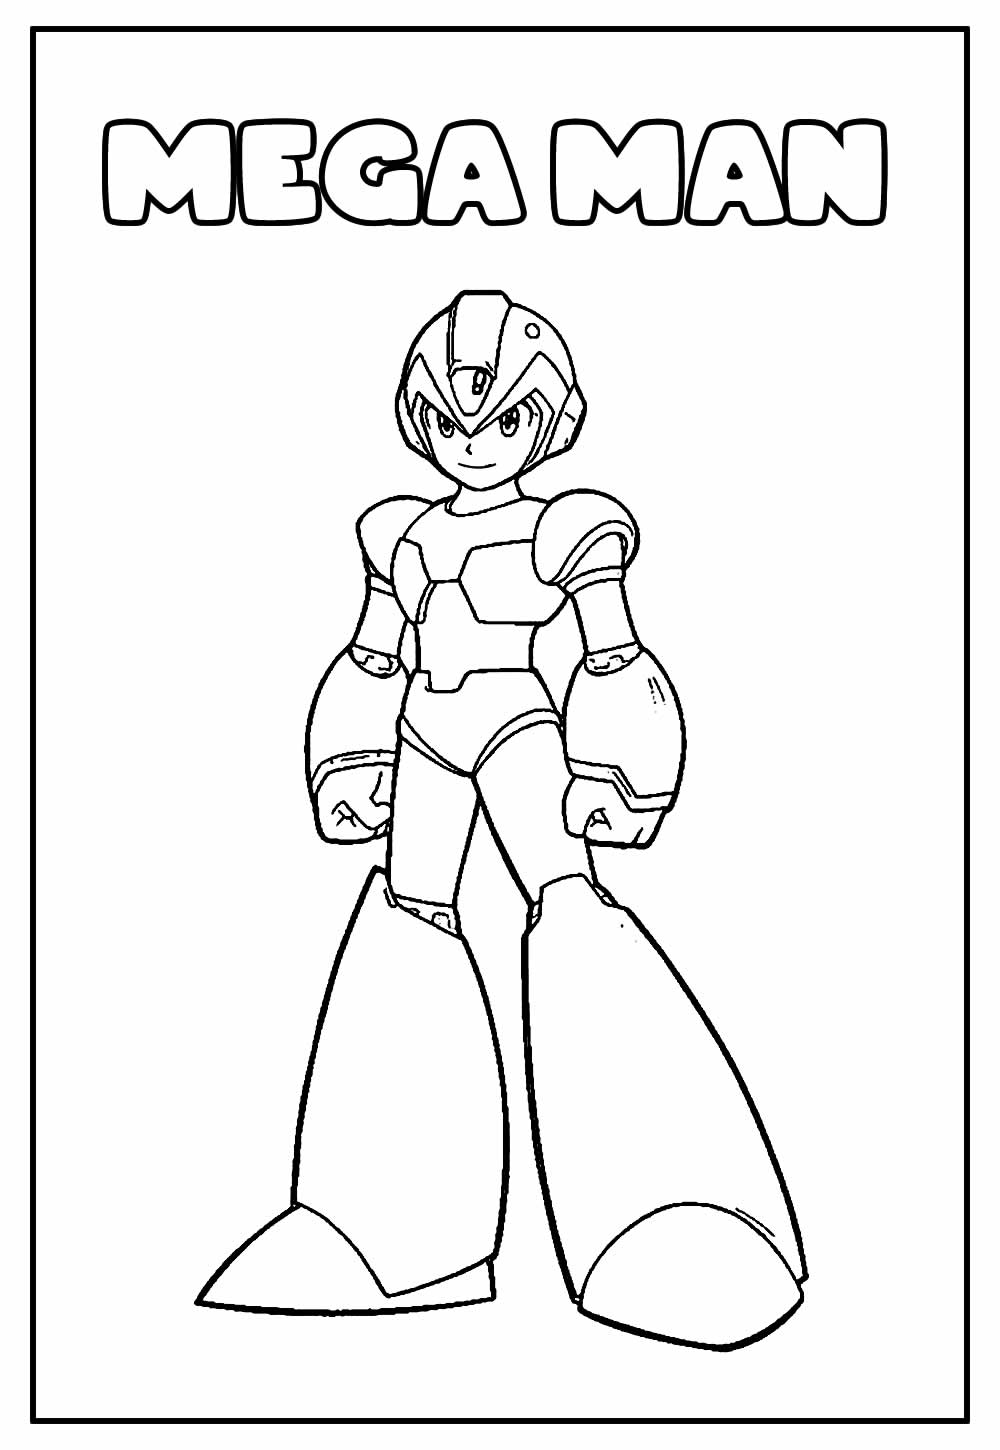 Desenhos para colorir do Mega Man